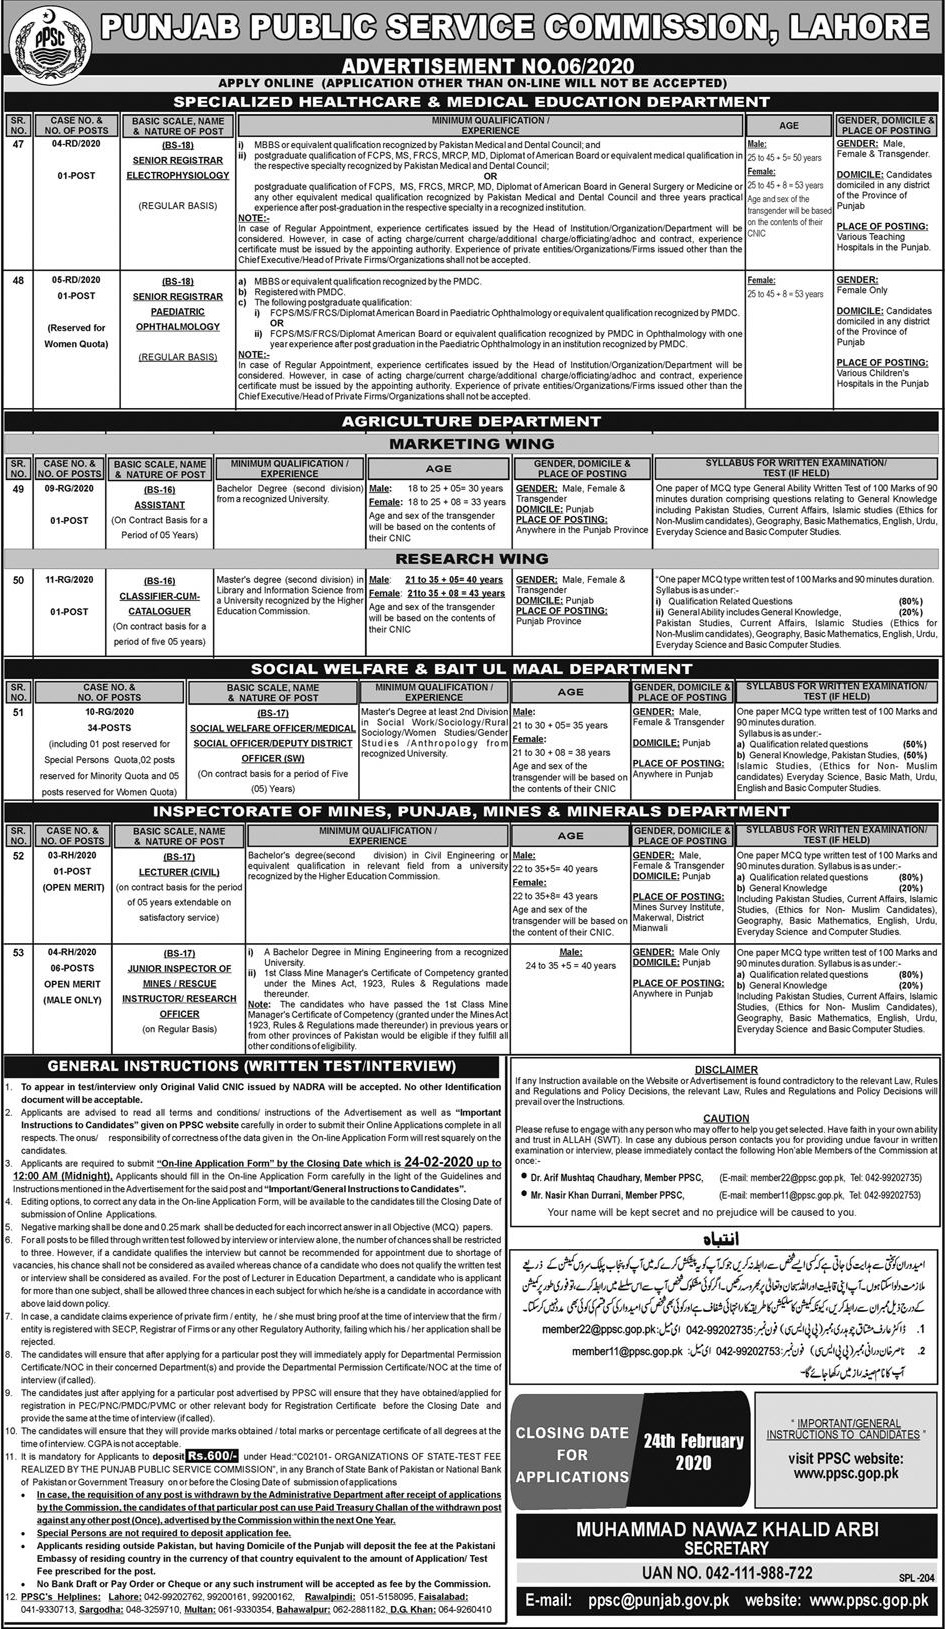 Multiples Position-Punjab Public Service Commission PPSC-Latest Govt Jobs in Pakistan 2020